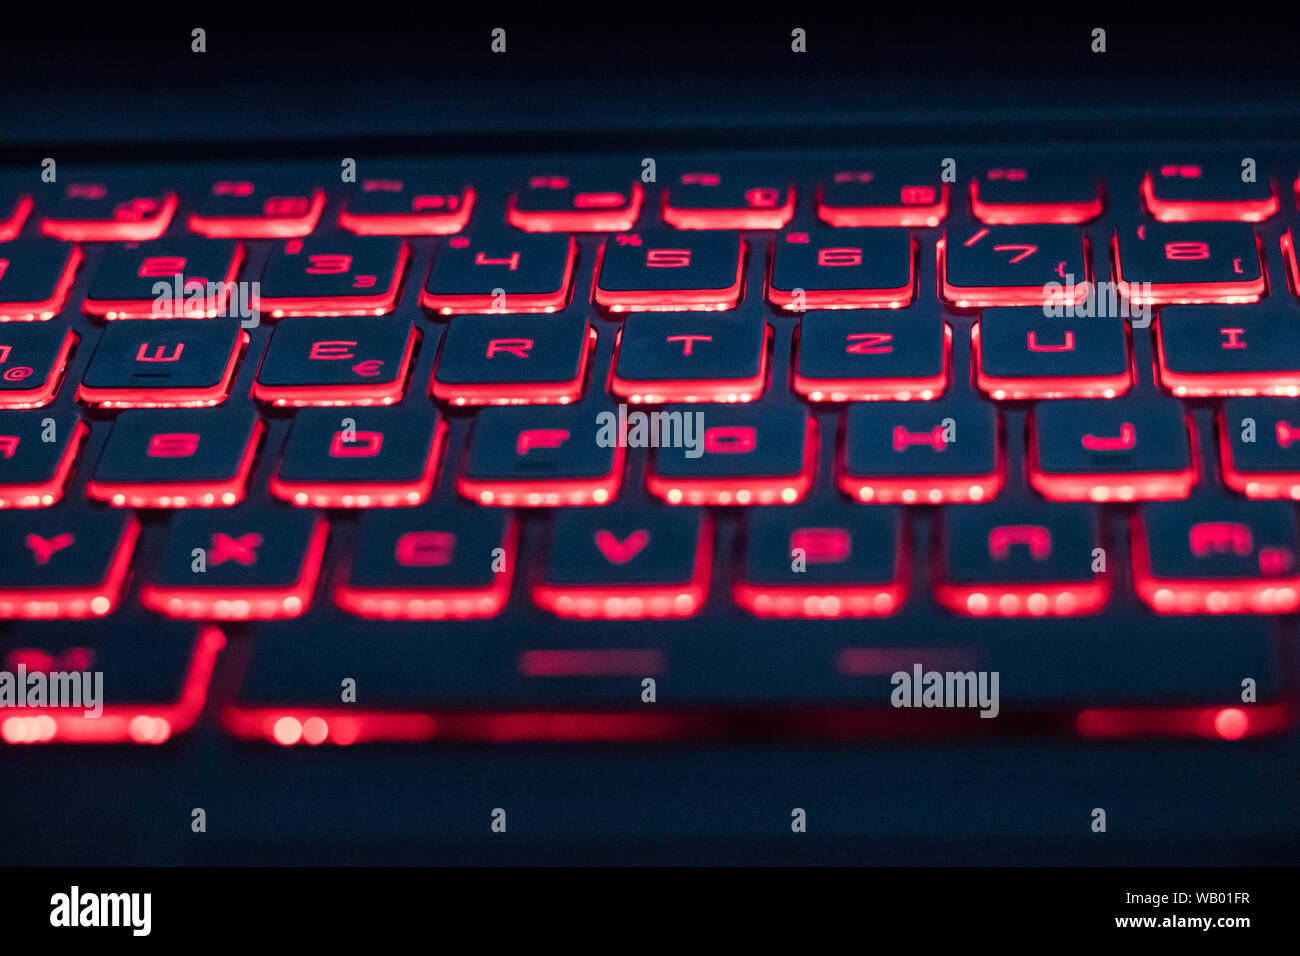 Teclado de ordenador rojo retroiluminado en oscuridad Fotografía Alamy